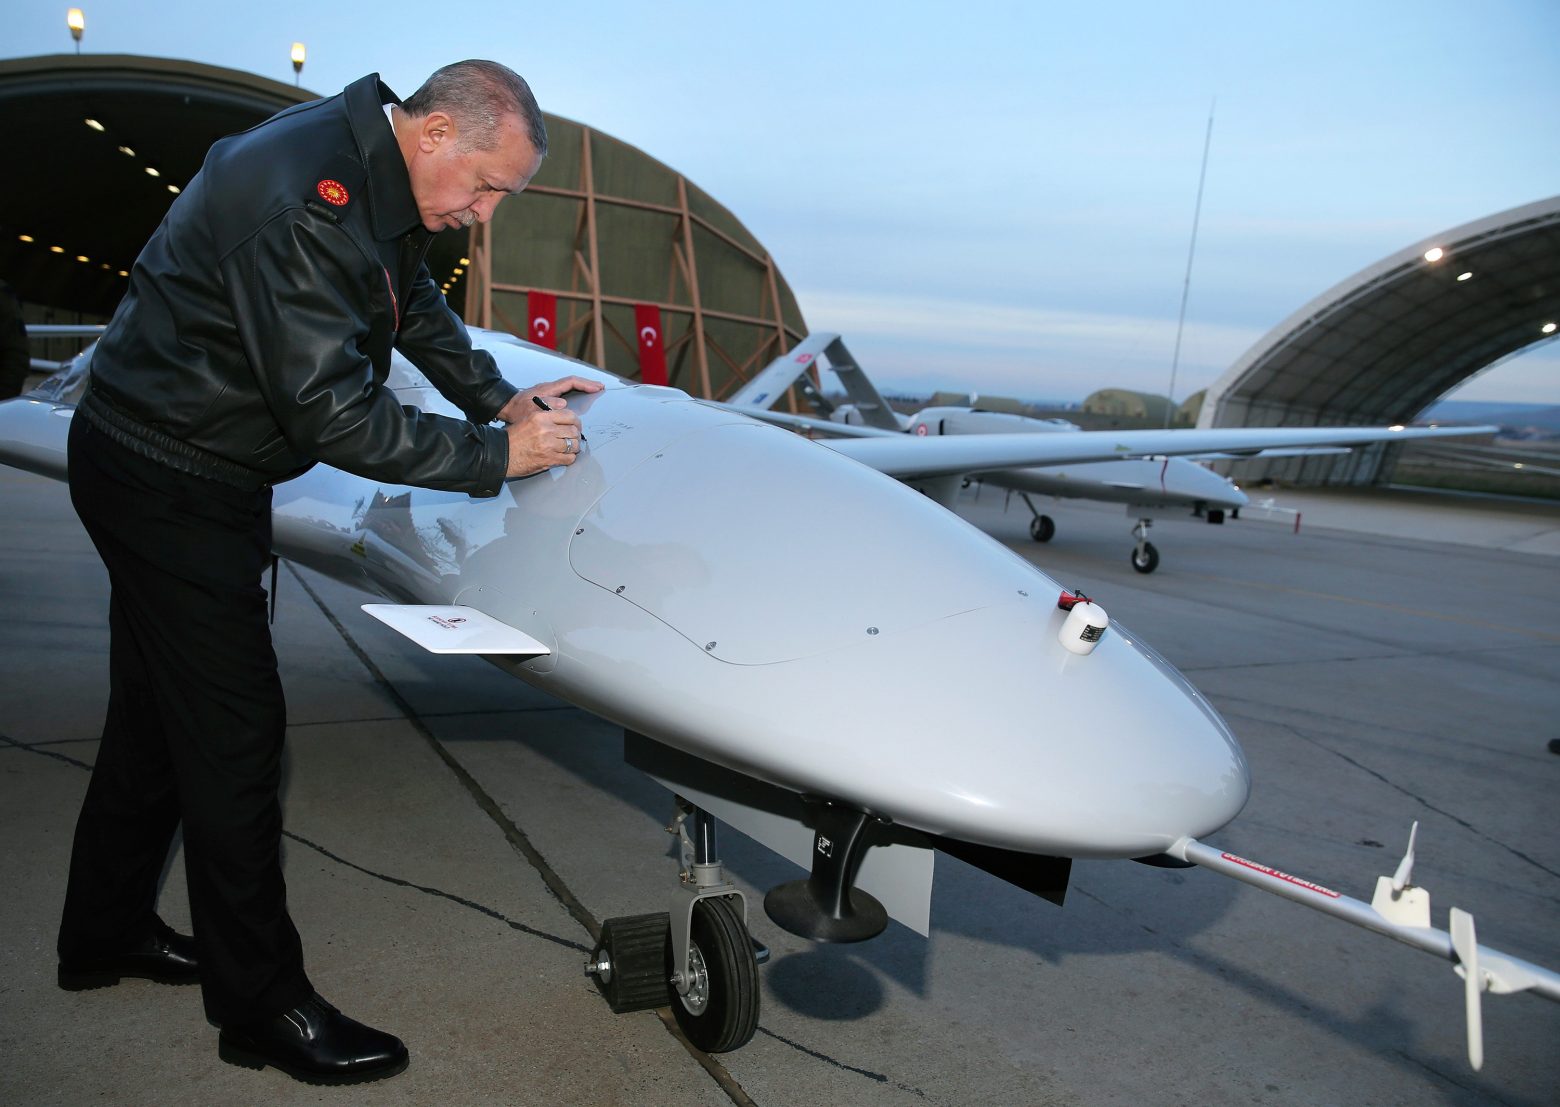 Τουρκία - Επιμένει στην επιχείρηση επιβολής των αξιώσεών της - Στέλνει και θαλάσσια drone σε Κύπρο και Αιγαίο